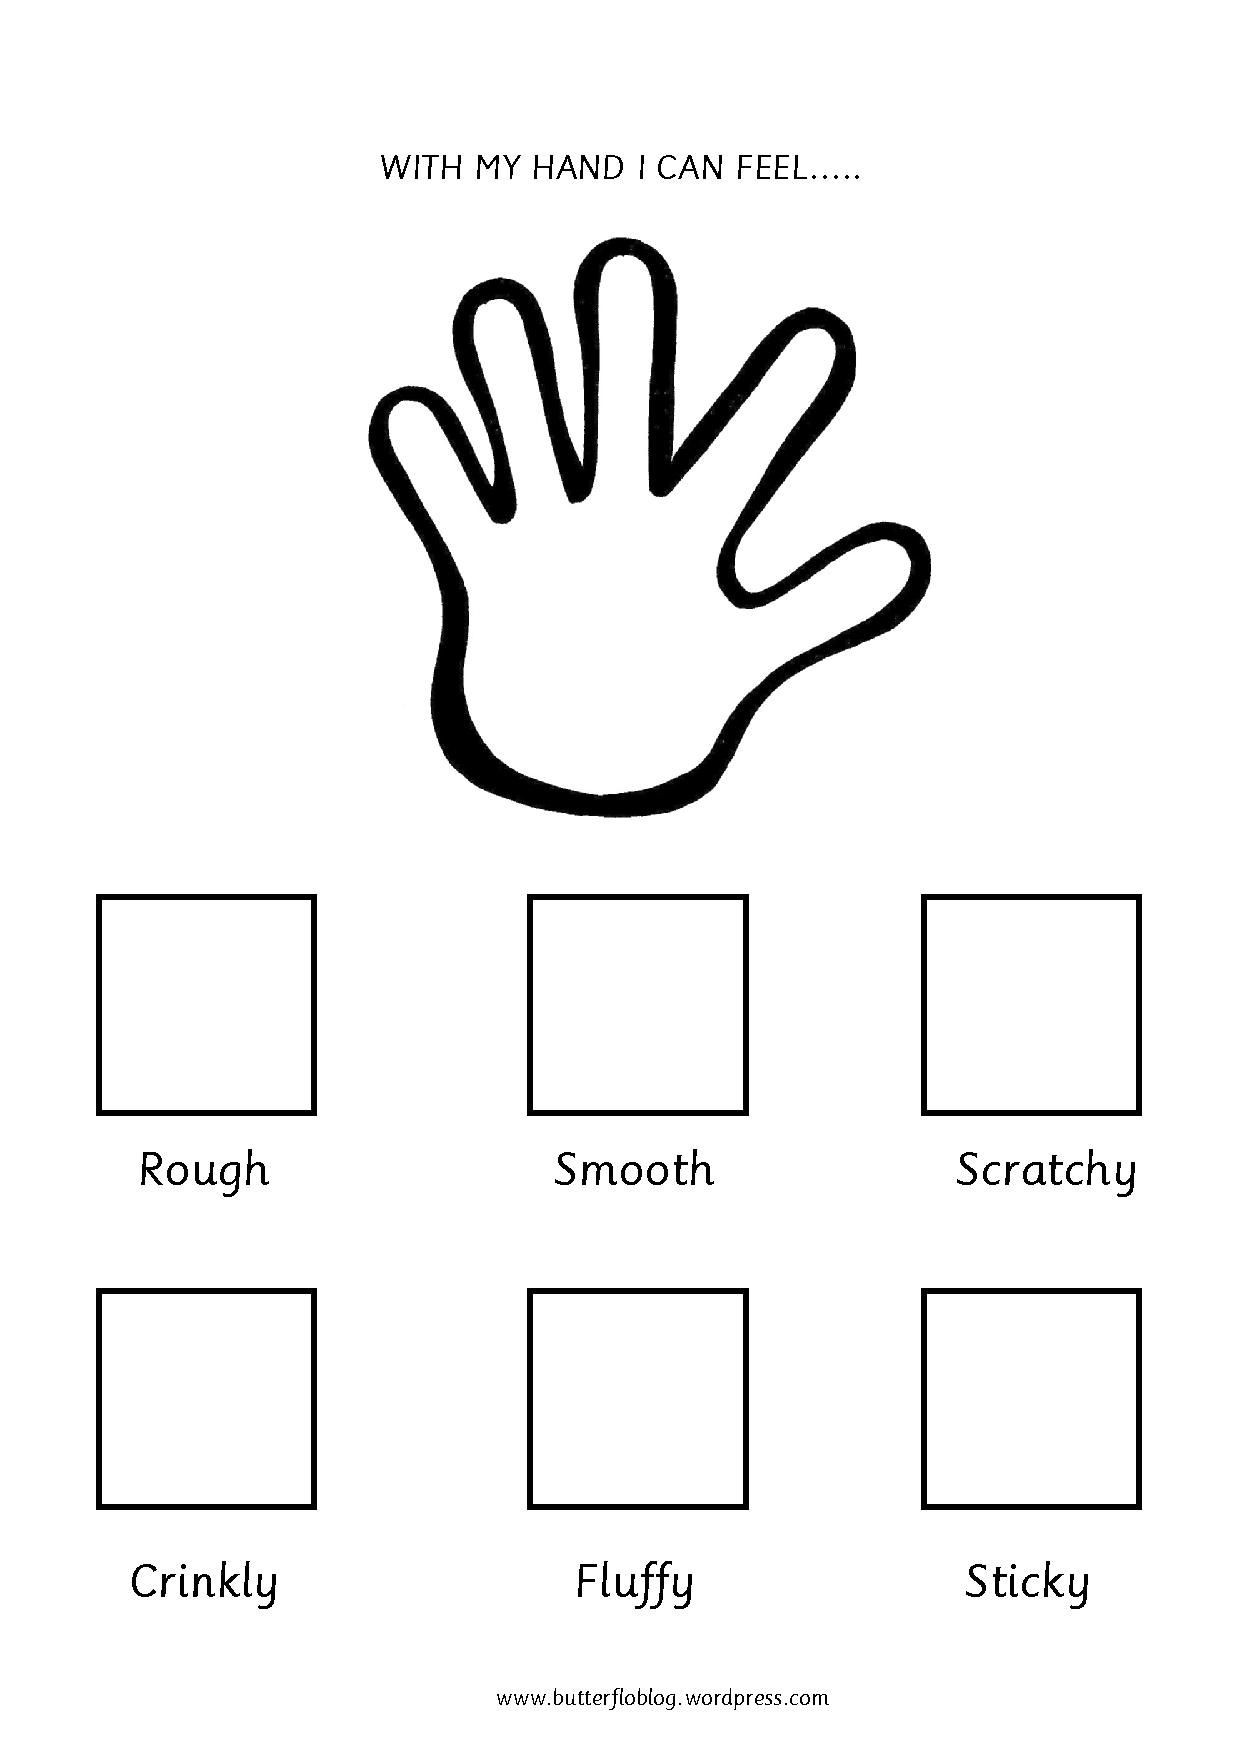 5 Senses Worksheets Preschool the Five Senses touch